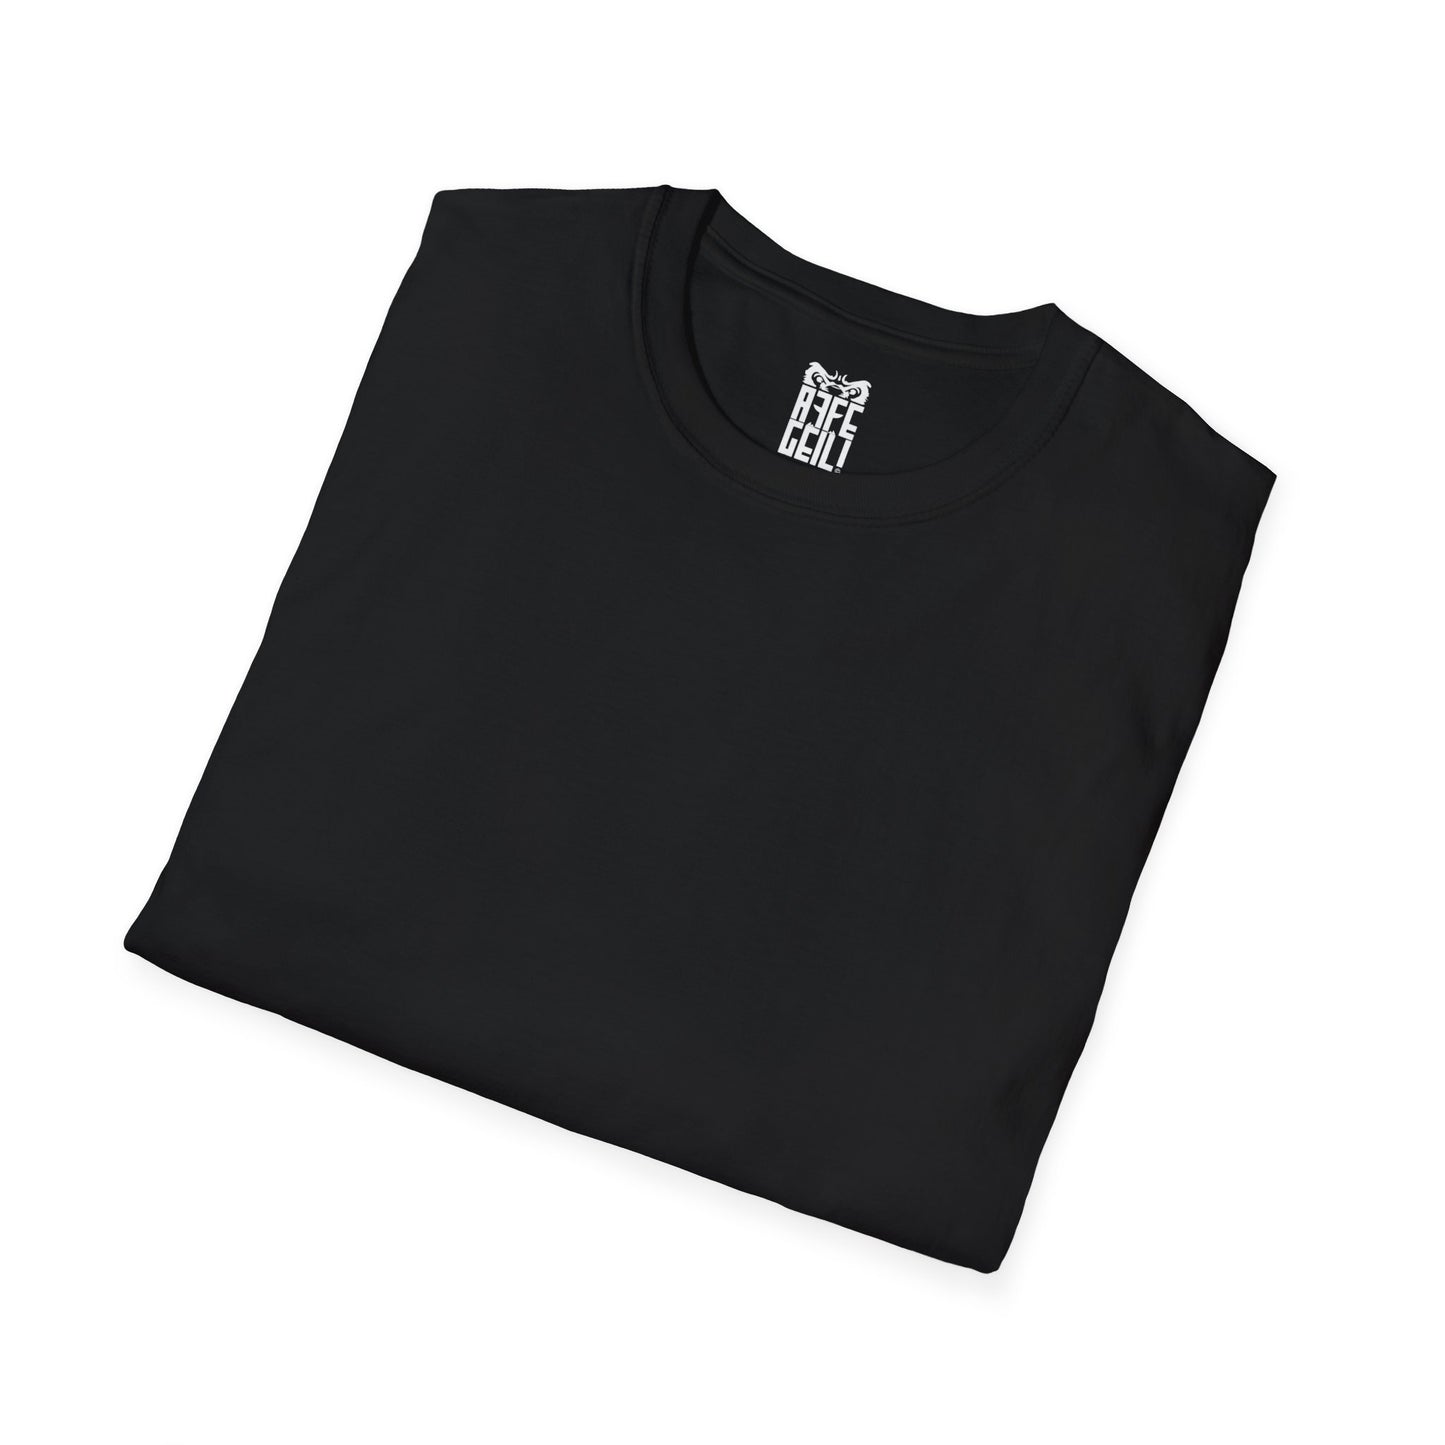 AFFEGEIL mit Ärmeldruck - Unisex Softstyle T-Shirt